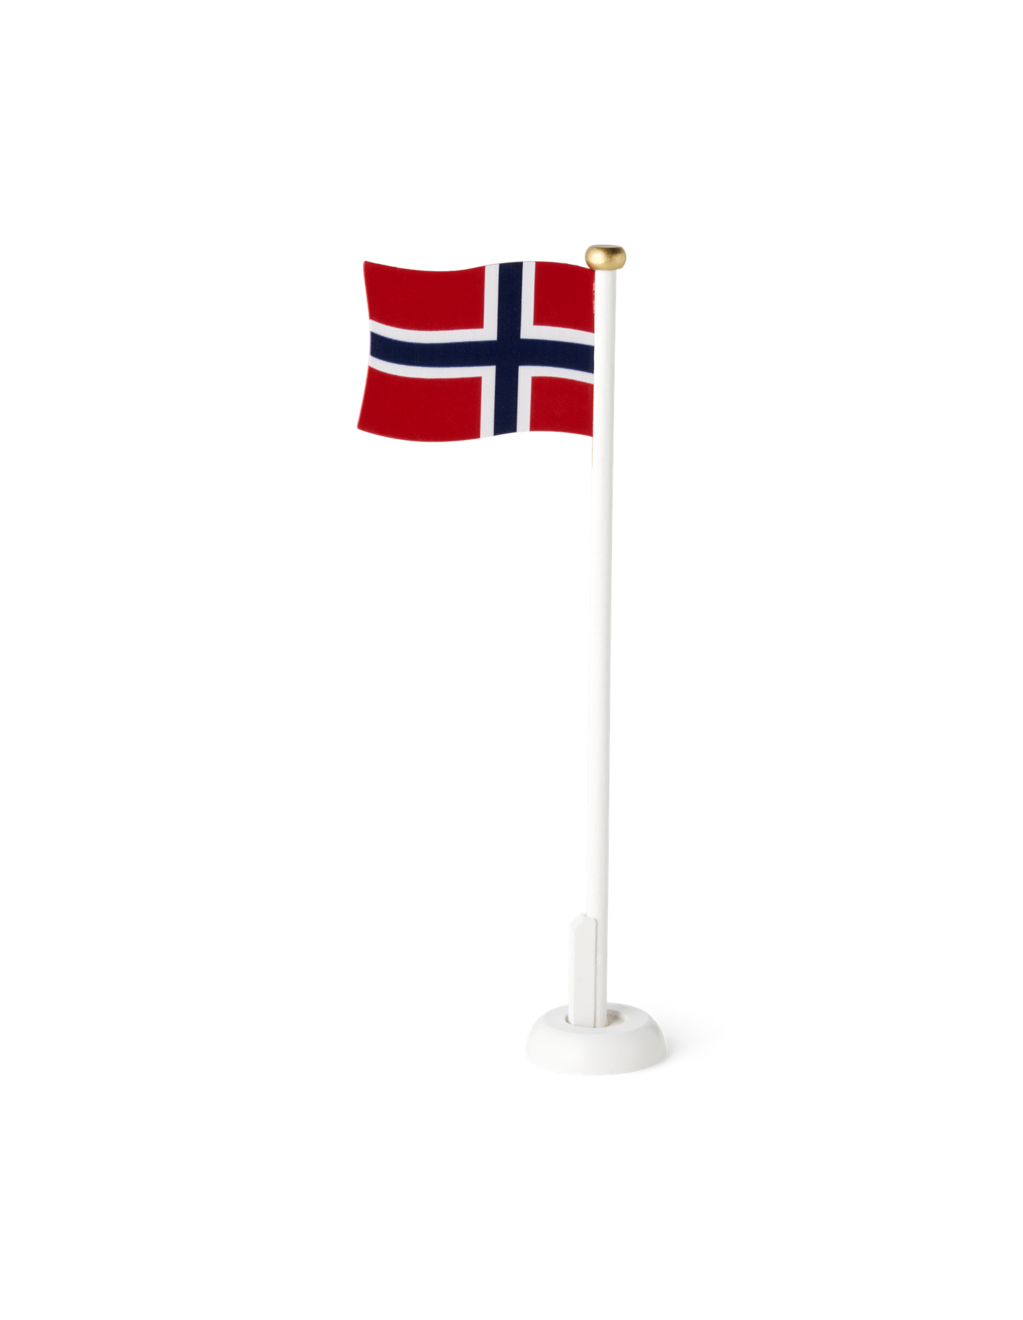 Tilbud: Norsk bordflagg kr 28,8 på Søstrene Grene